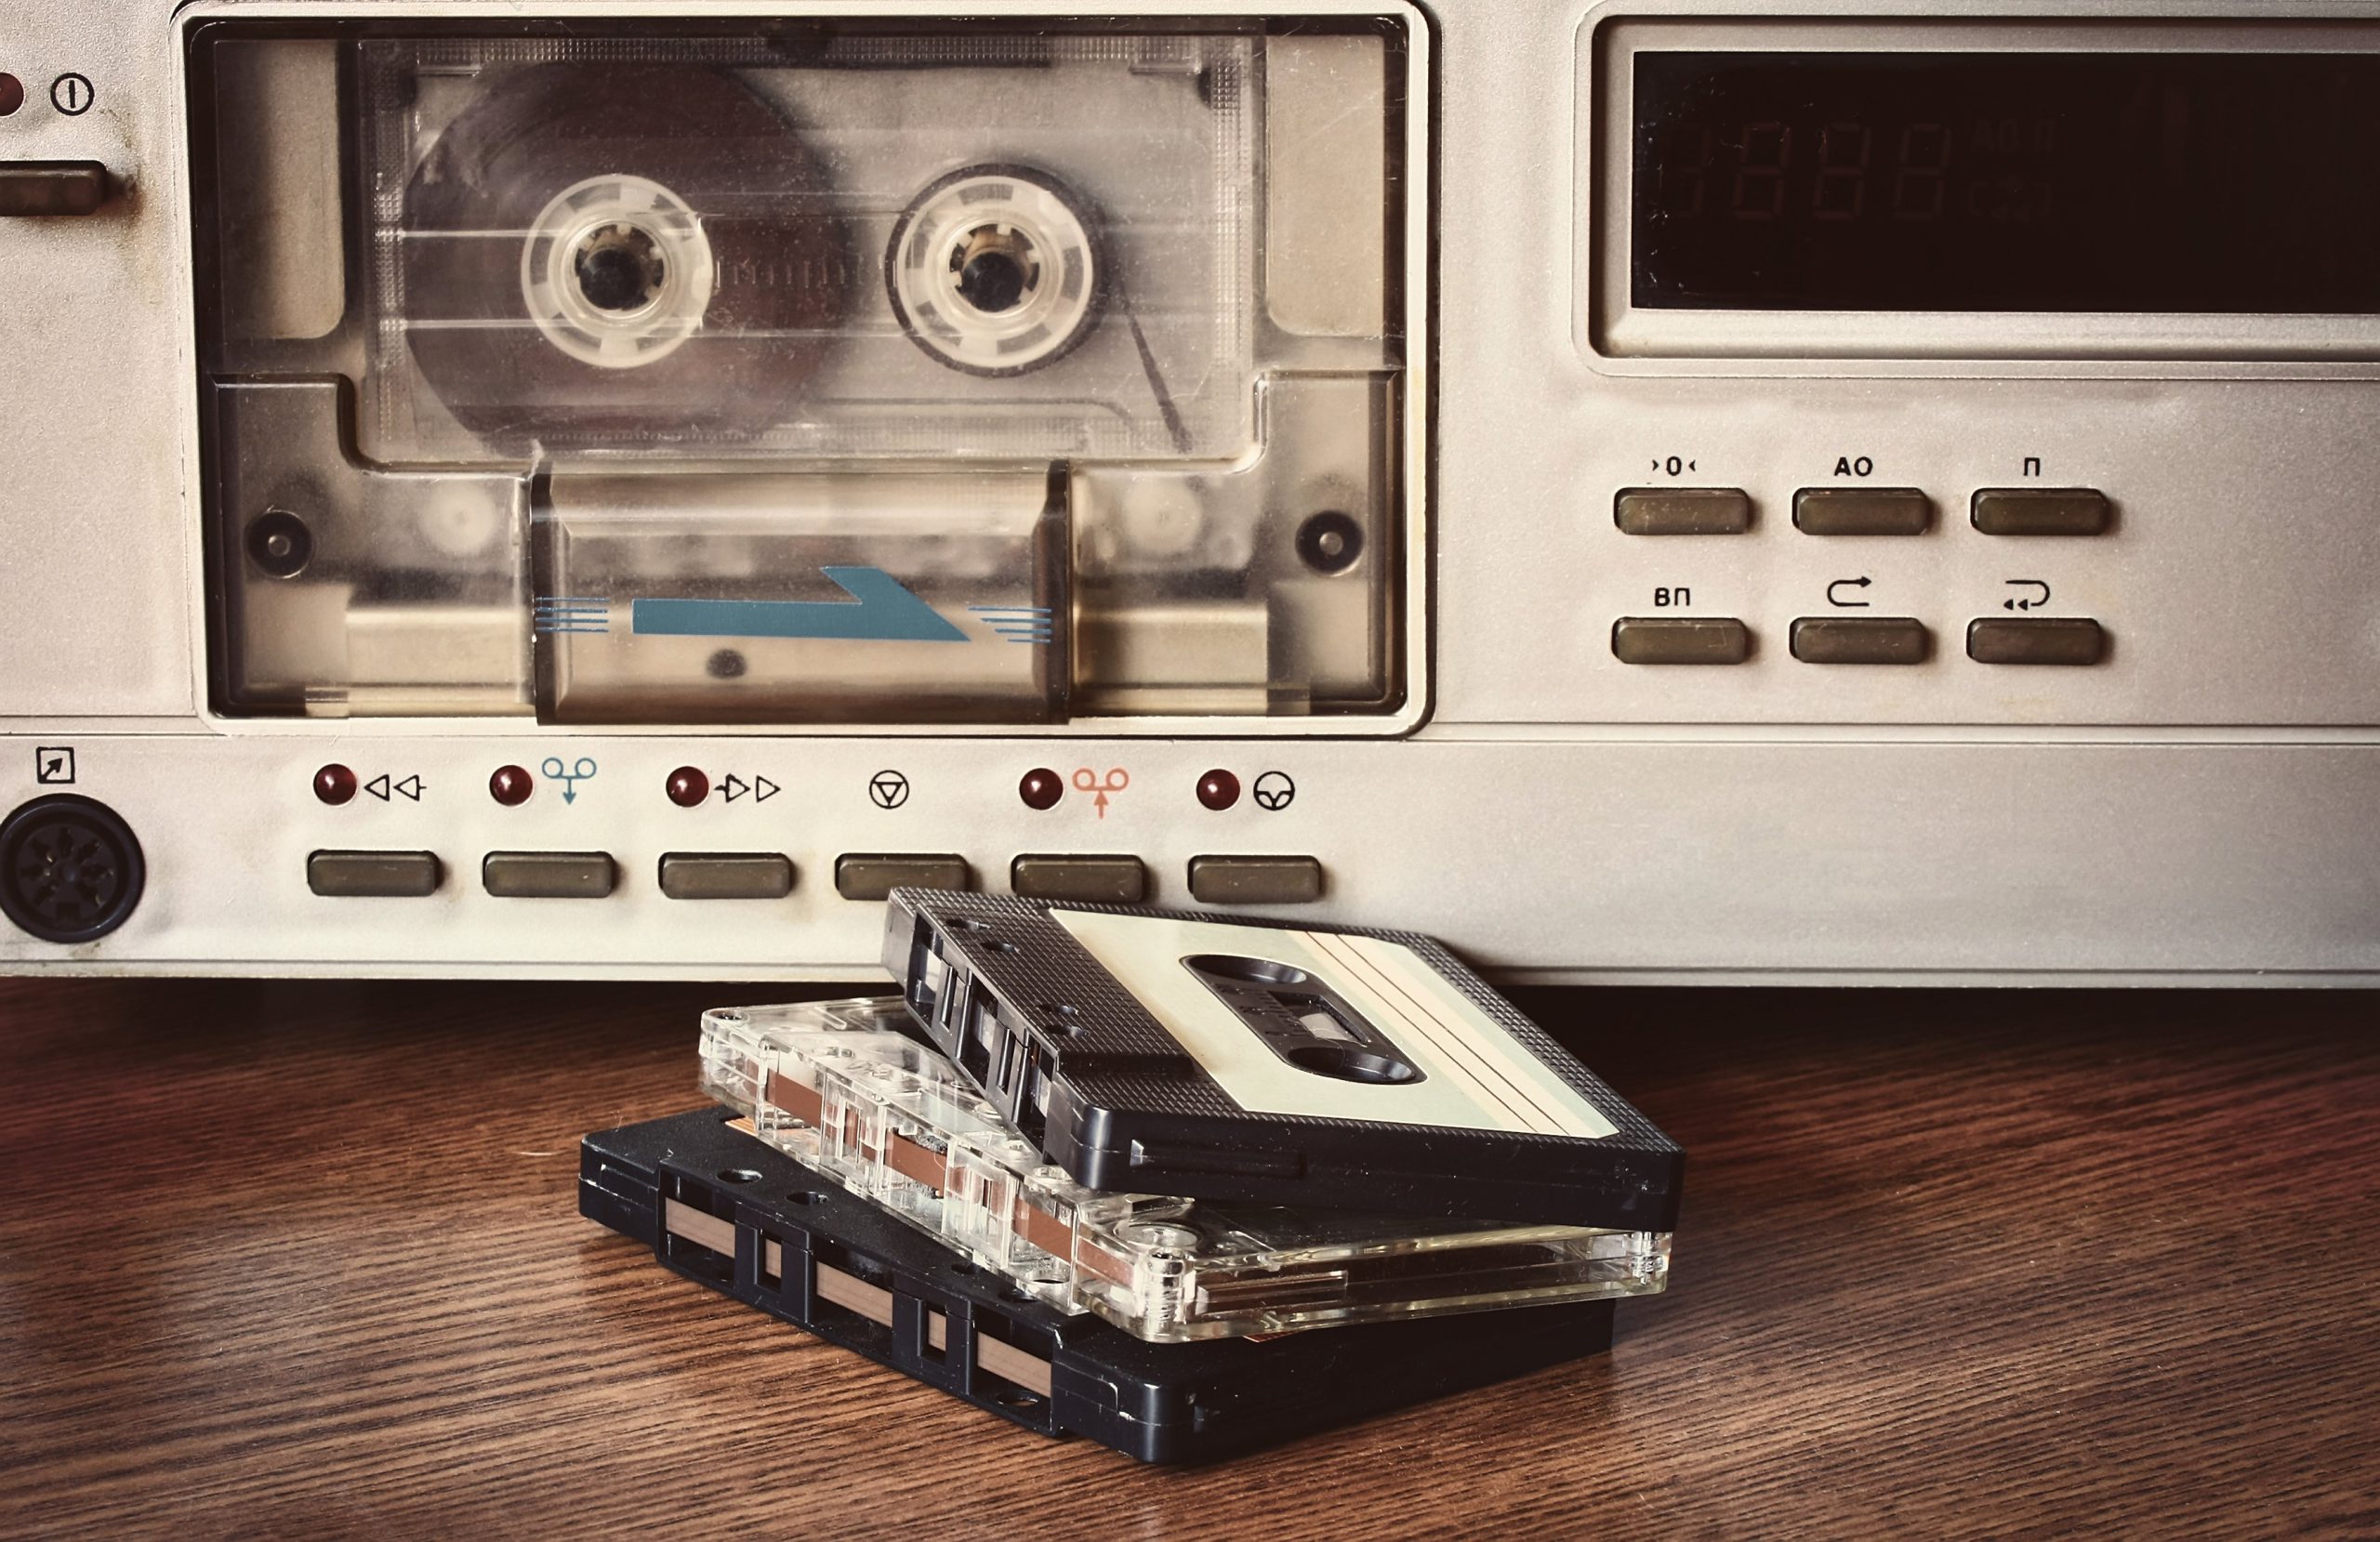  Amintiri din vremea când lipeam casetele audio cu scoci. Ce muzică ascultă lumea şi cu ce folos? Iată opinia psihologului